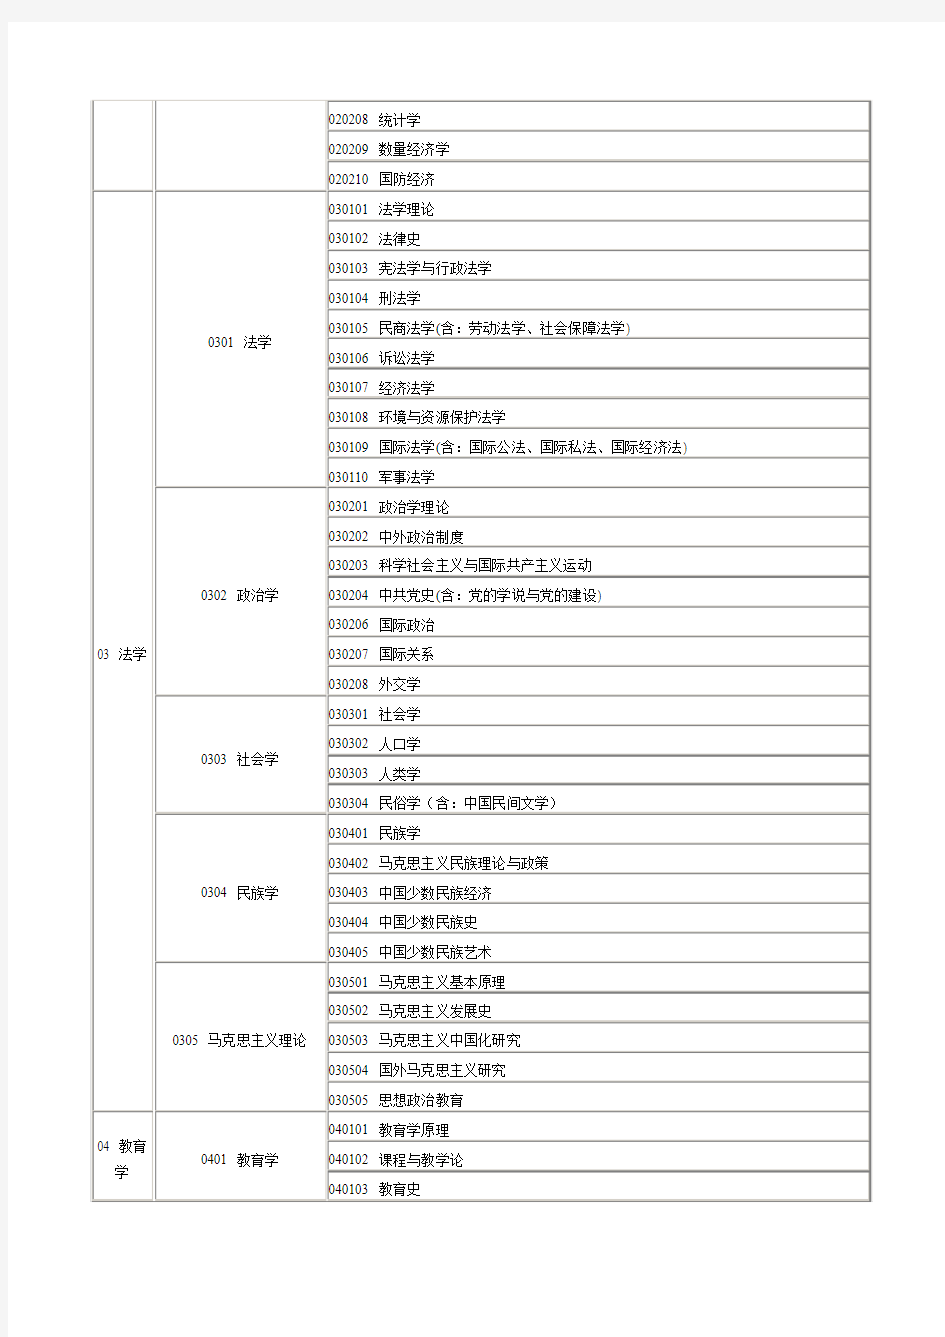 2012年国家公务员考试专业类别对照表